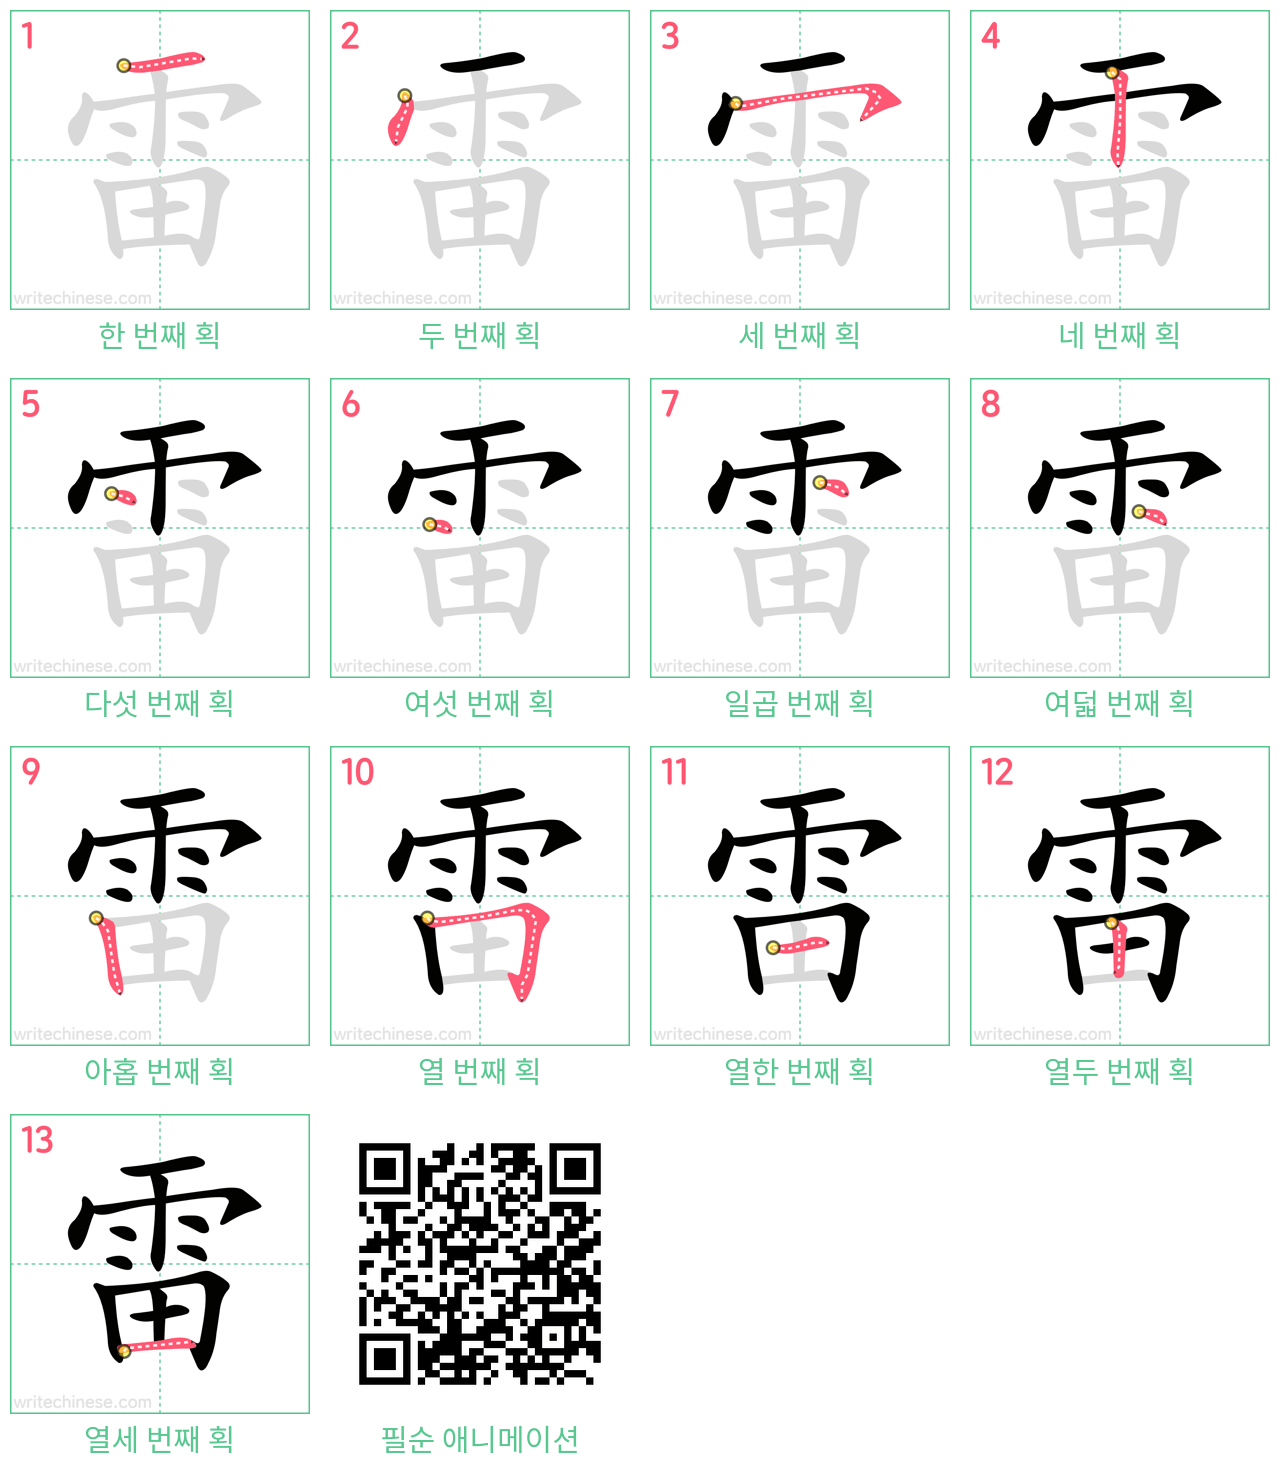 雷 step-by-step stroke order diagrams